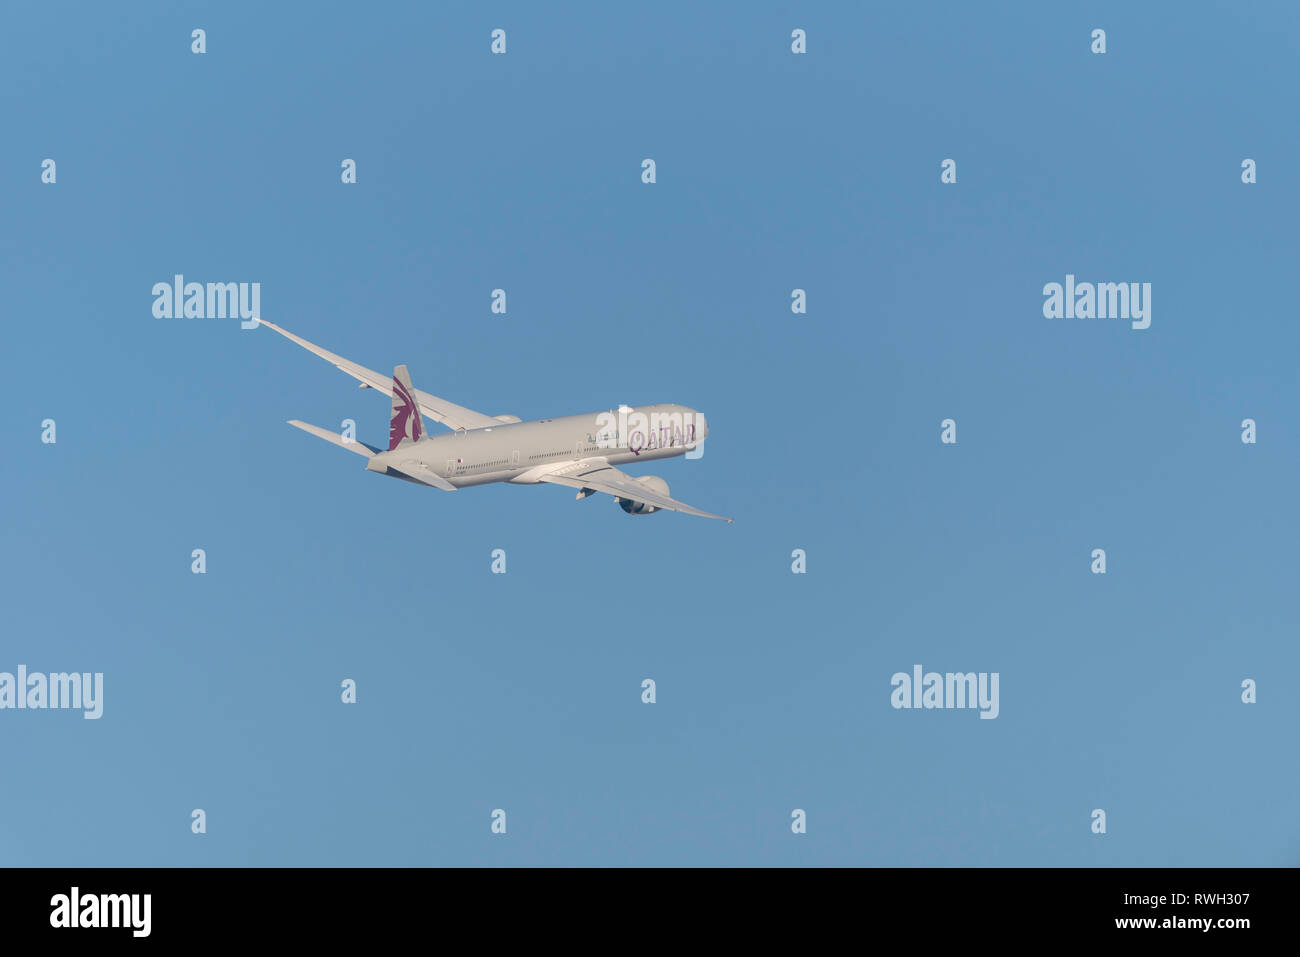 Qatar Airways Boeing 777 aereo di linea A7-BET decolla dall'aeroporto Heathrow di Londra, Regno Unito, in cielo blu Foto Stock